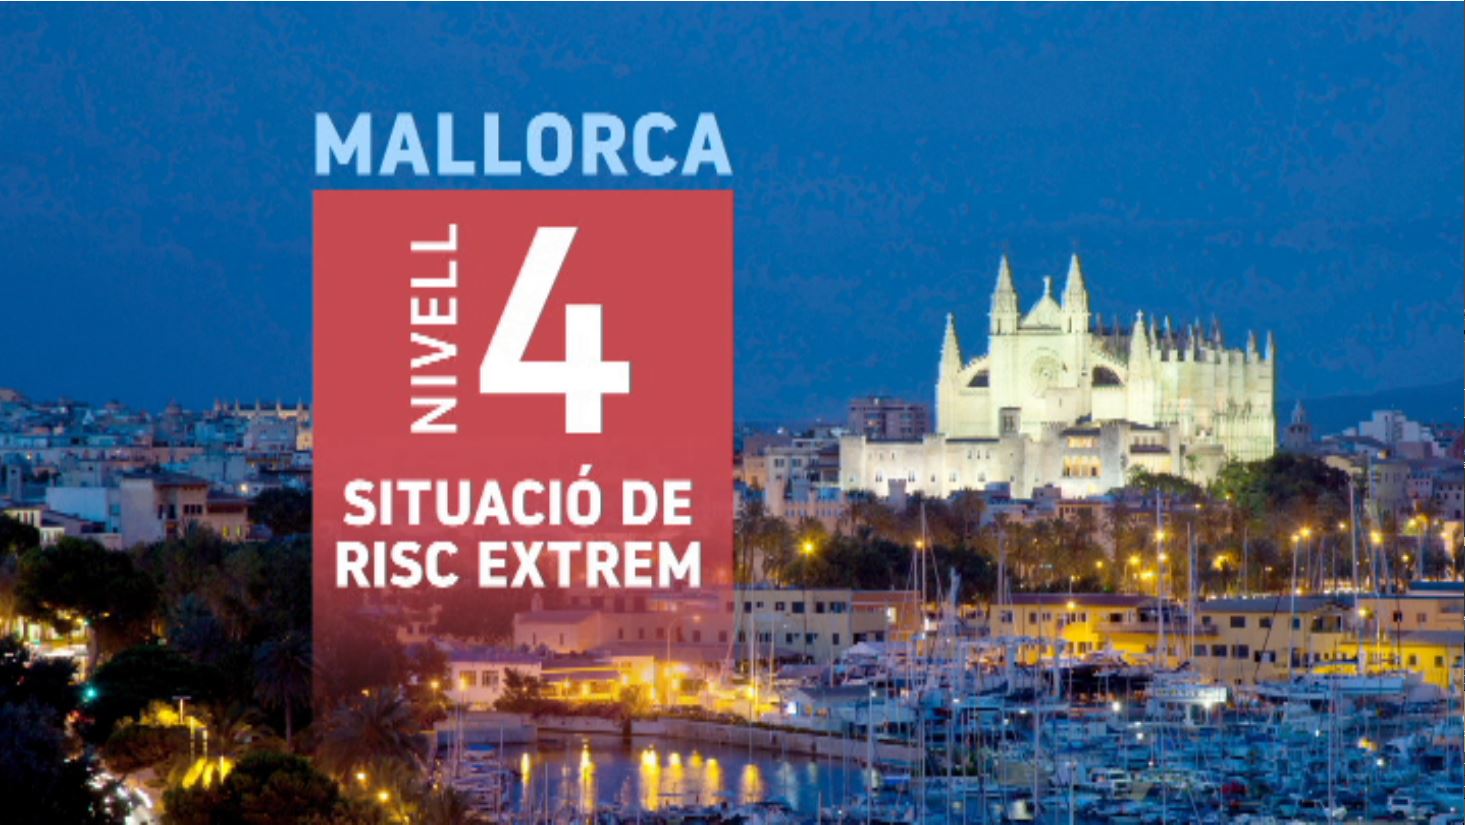 Mallorca entra avui al nivell 4: reunions de 6 persones i toc de queda a les 10 del vespre